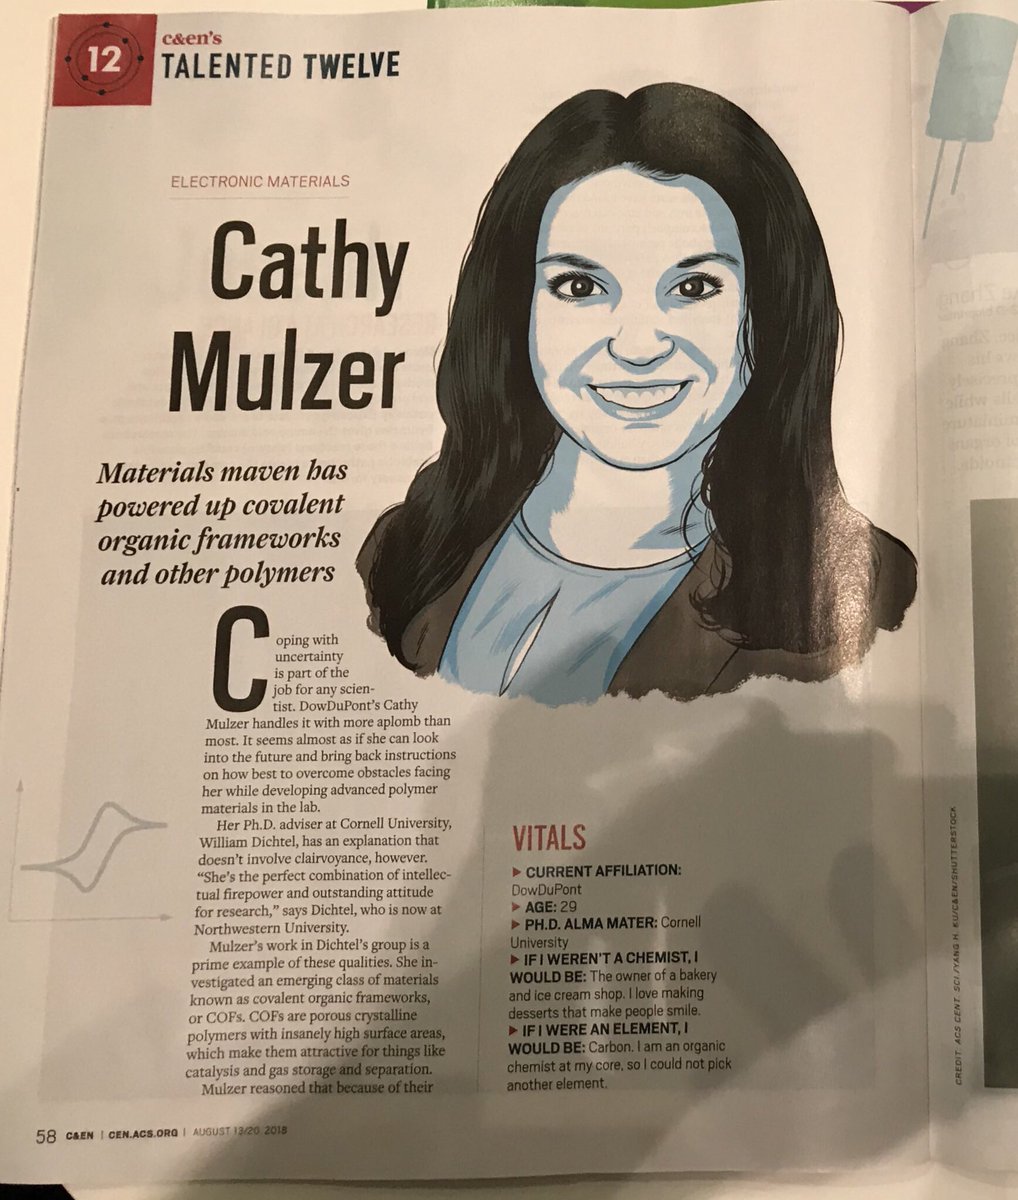 Congratulations Cathy! @crmulzer @cenmag #Talented12